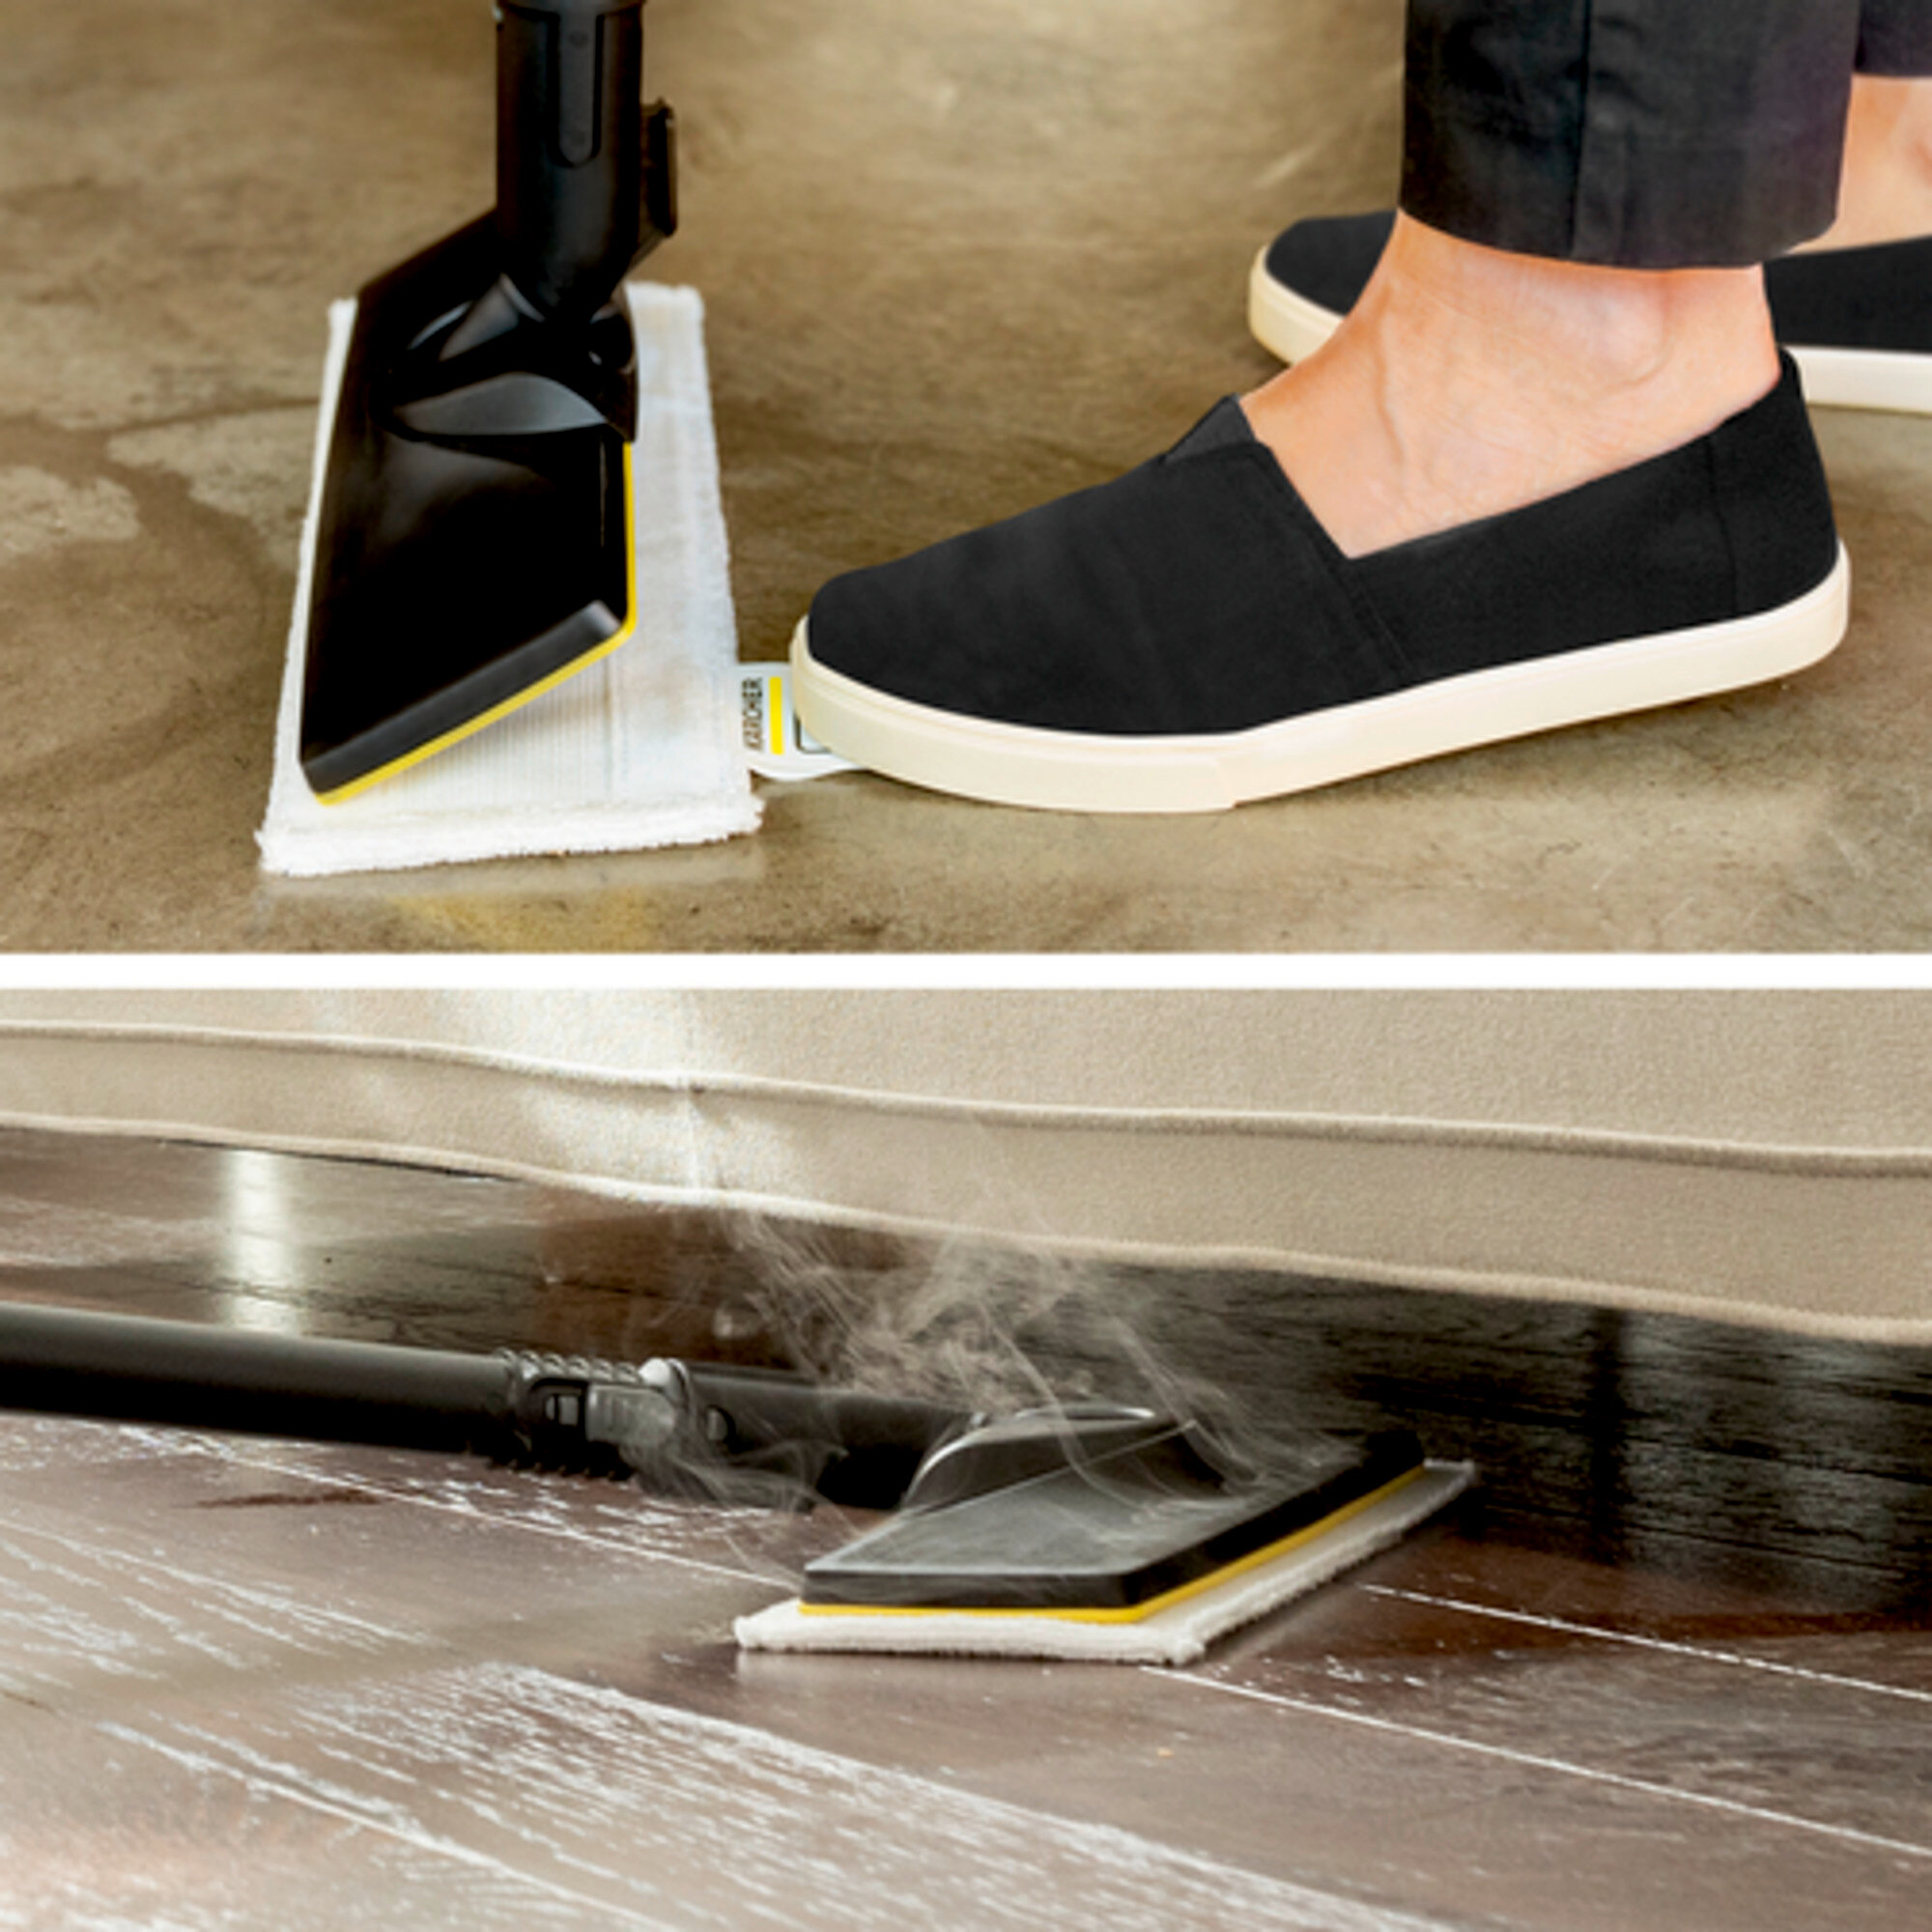 Parný čistič Parný čistič SC 4 Deluxe: Súprava na čistenie podlahy EasyFix s flexibilným kĺbom na podlahovej hubici a pohodlným suchým zipsom na upevnenie utierky na podlahu